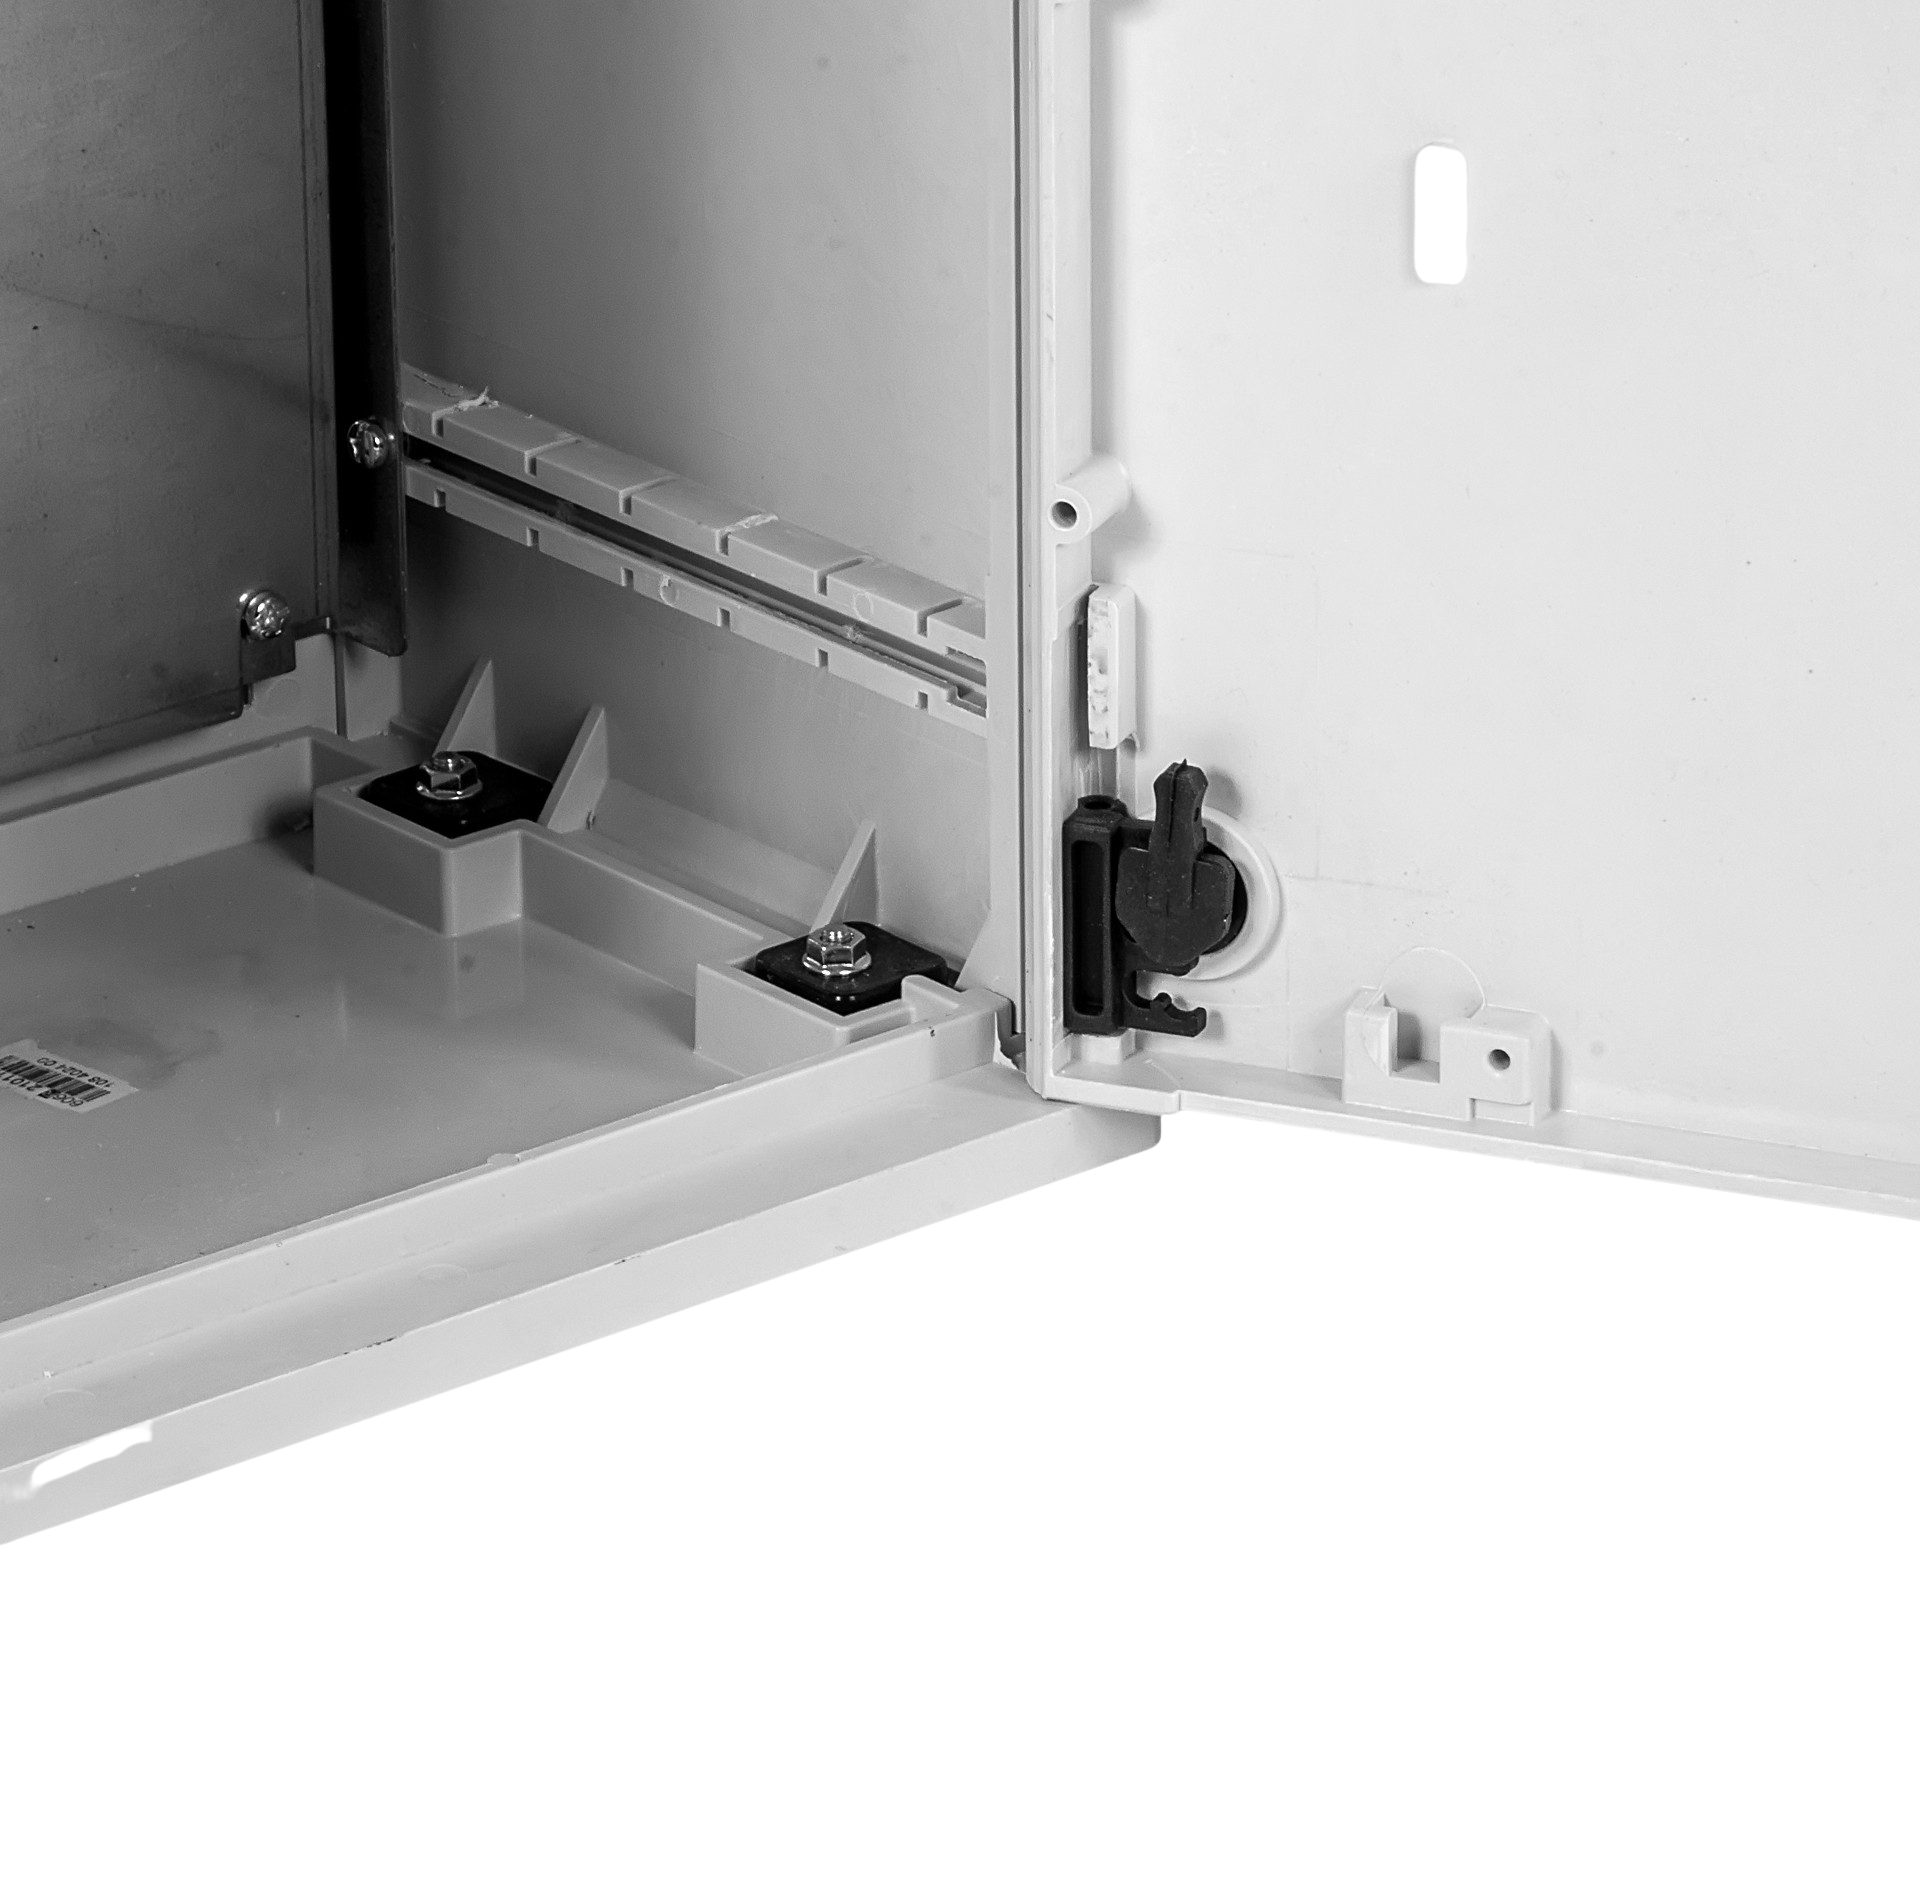 Электротехнический шкаф полиэстеровый IP44 (В800*Ш500*Г250) EP c одной дверью от ЦМО